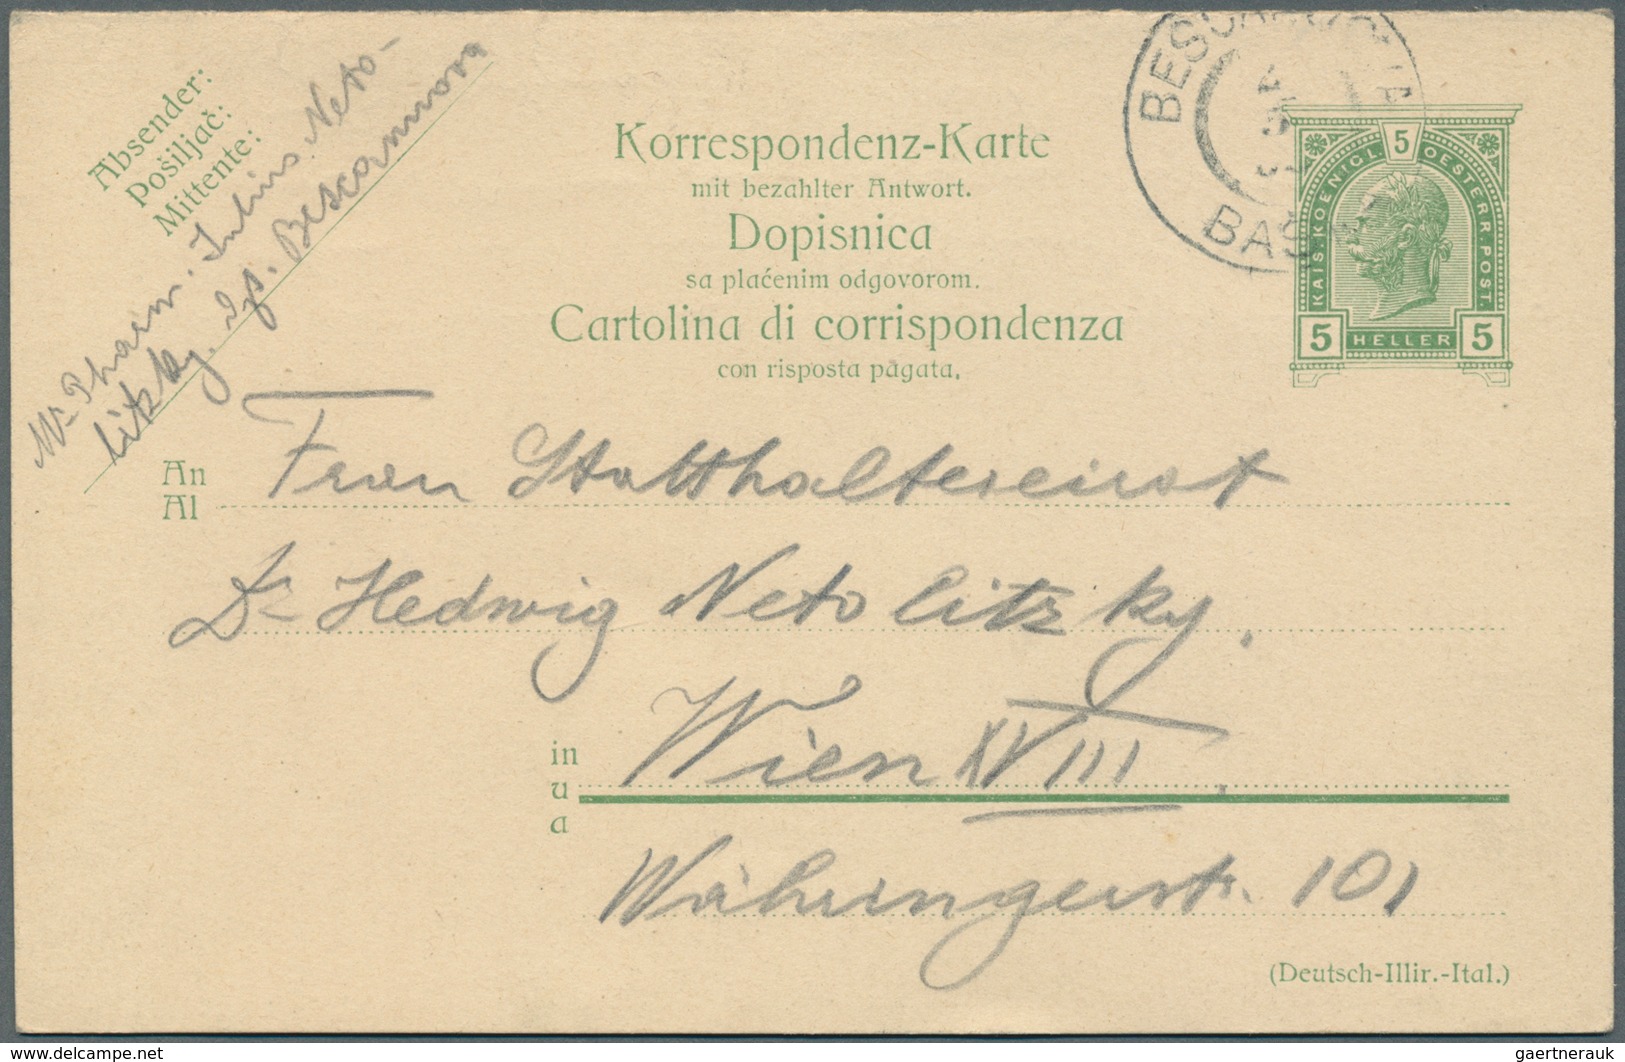 Österreich - Ganzsachen: 1900/1919, reichhaltige Sammlung mit ca.450 Ganzsachen-Postkarten der "Hell